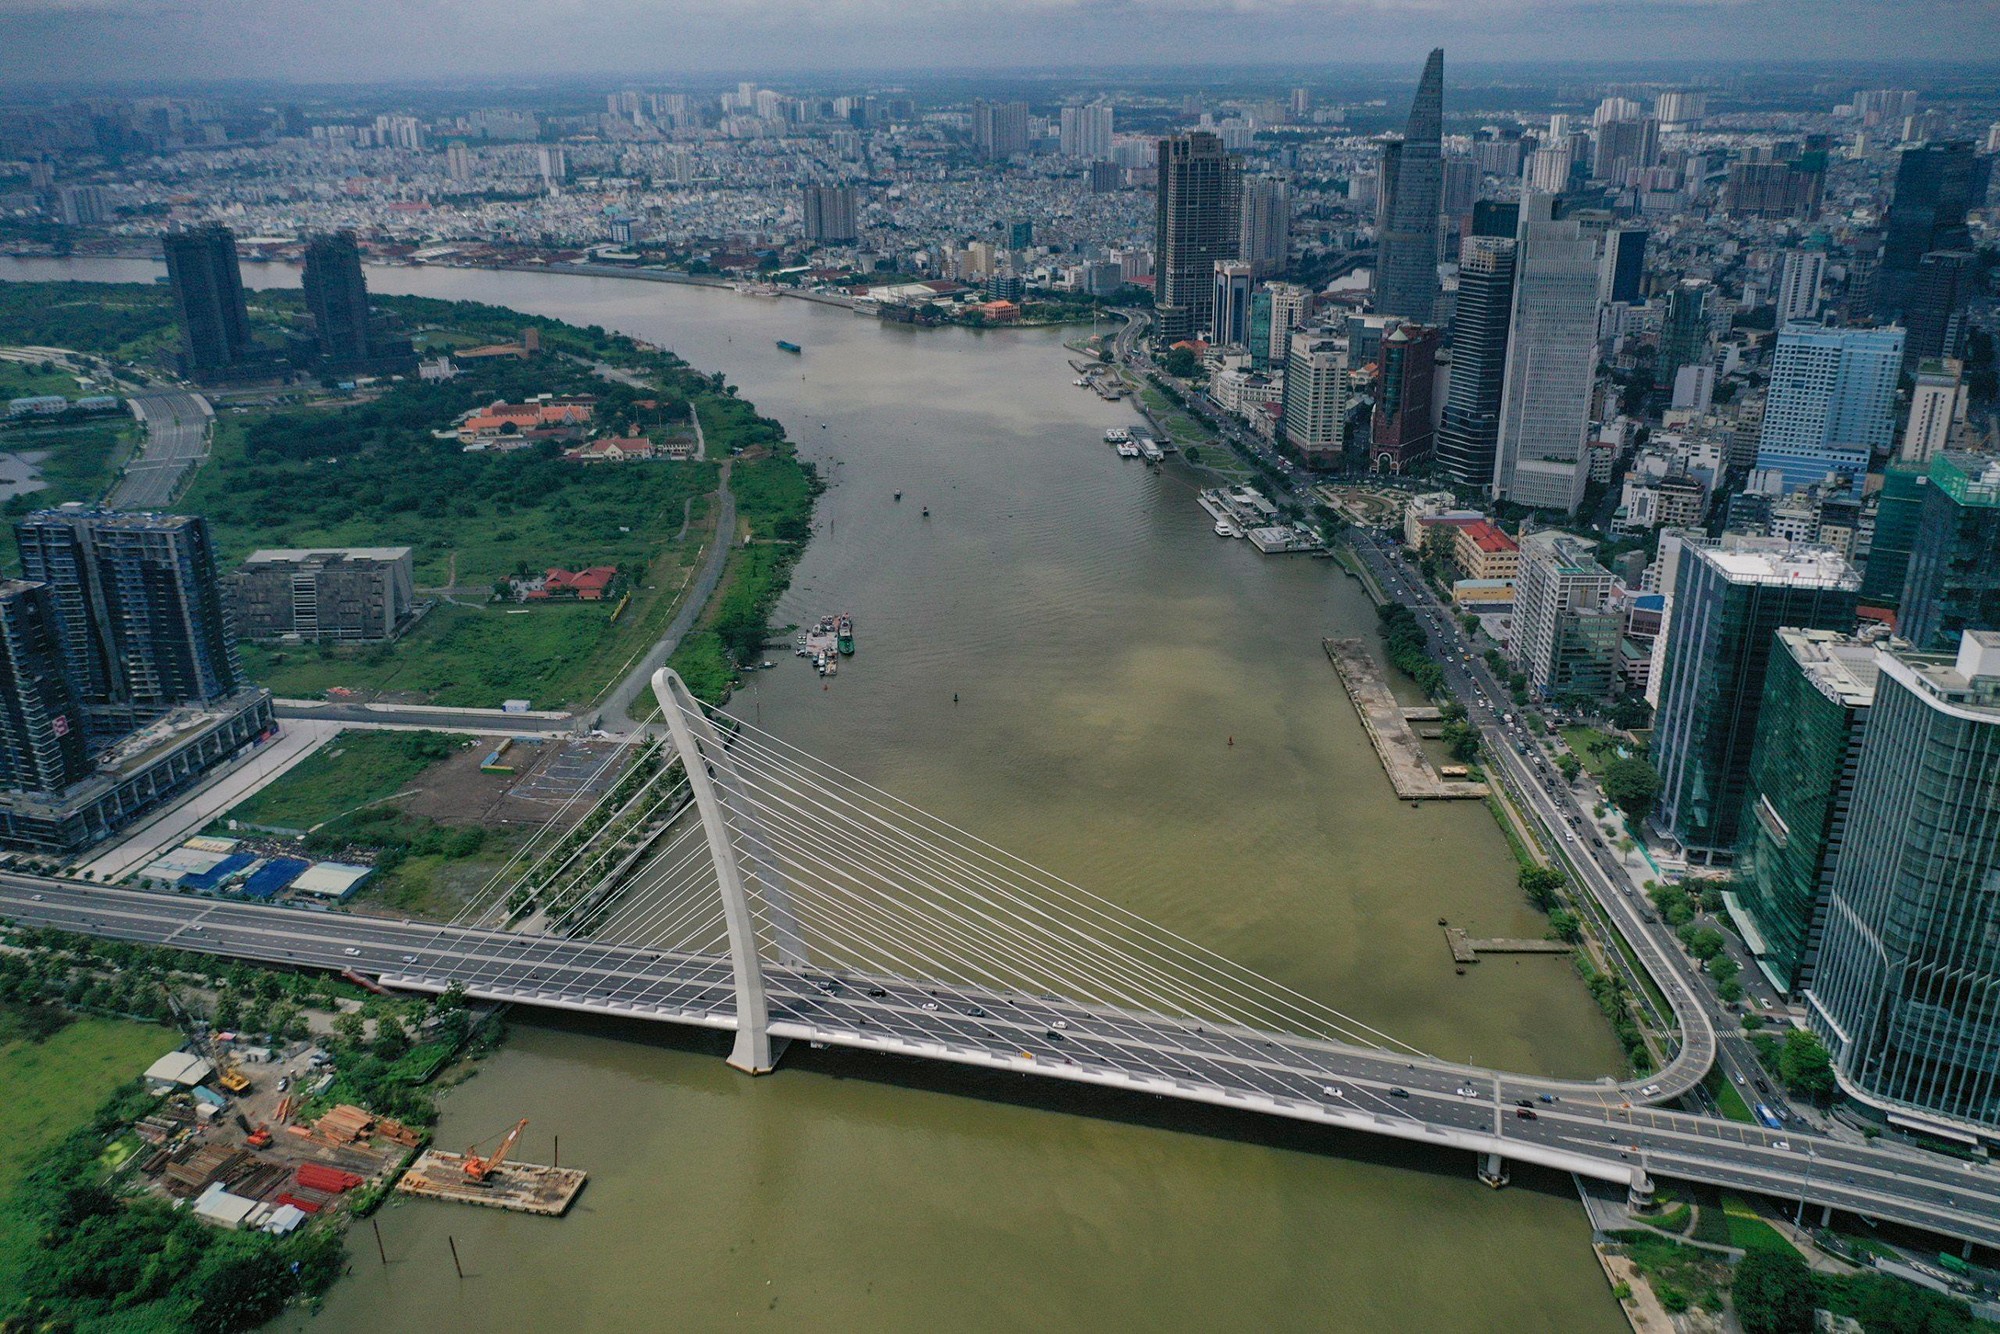 Mới đây, TP.HCM lên kế hoạch chỉnh trang không gian, tạo diện mạo mới bờ sông Sài Gòn phía Khu đô thị mới Thủ Thiêm (TP Thủ Đức). Đoạn bờ sông được cải tạo dài khoảng 830m, từ cầu Ba Son đến nóc hầm Thủ Thiêm.